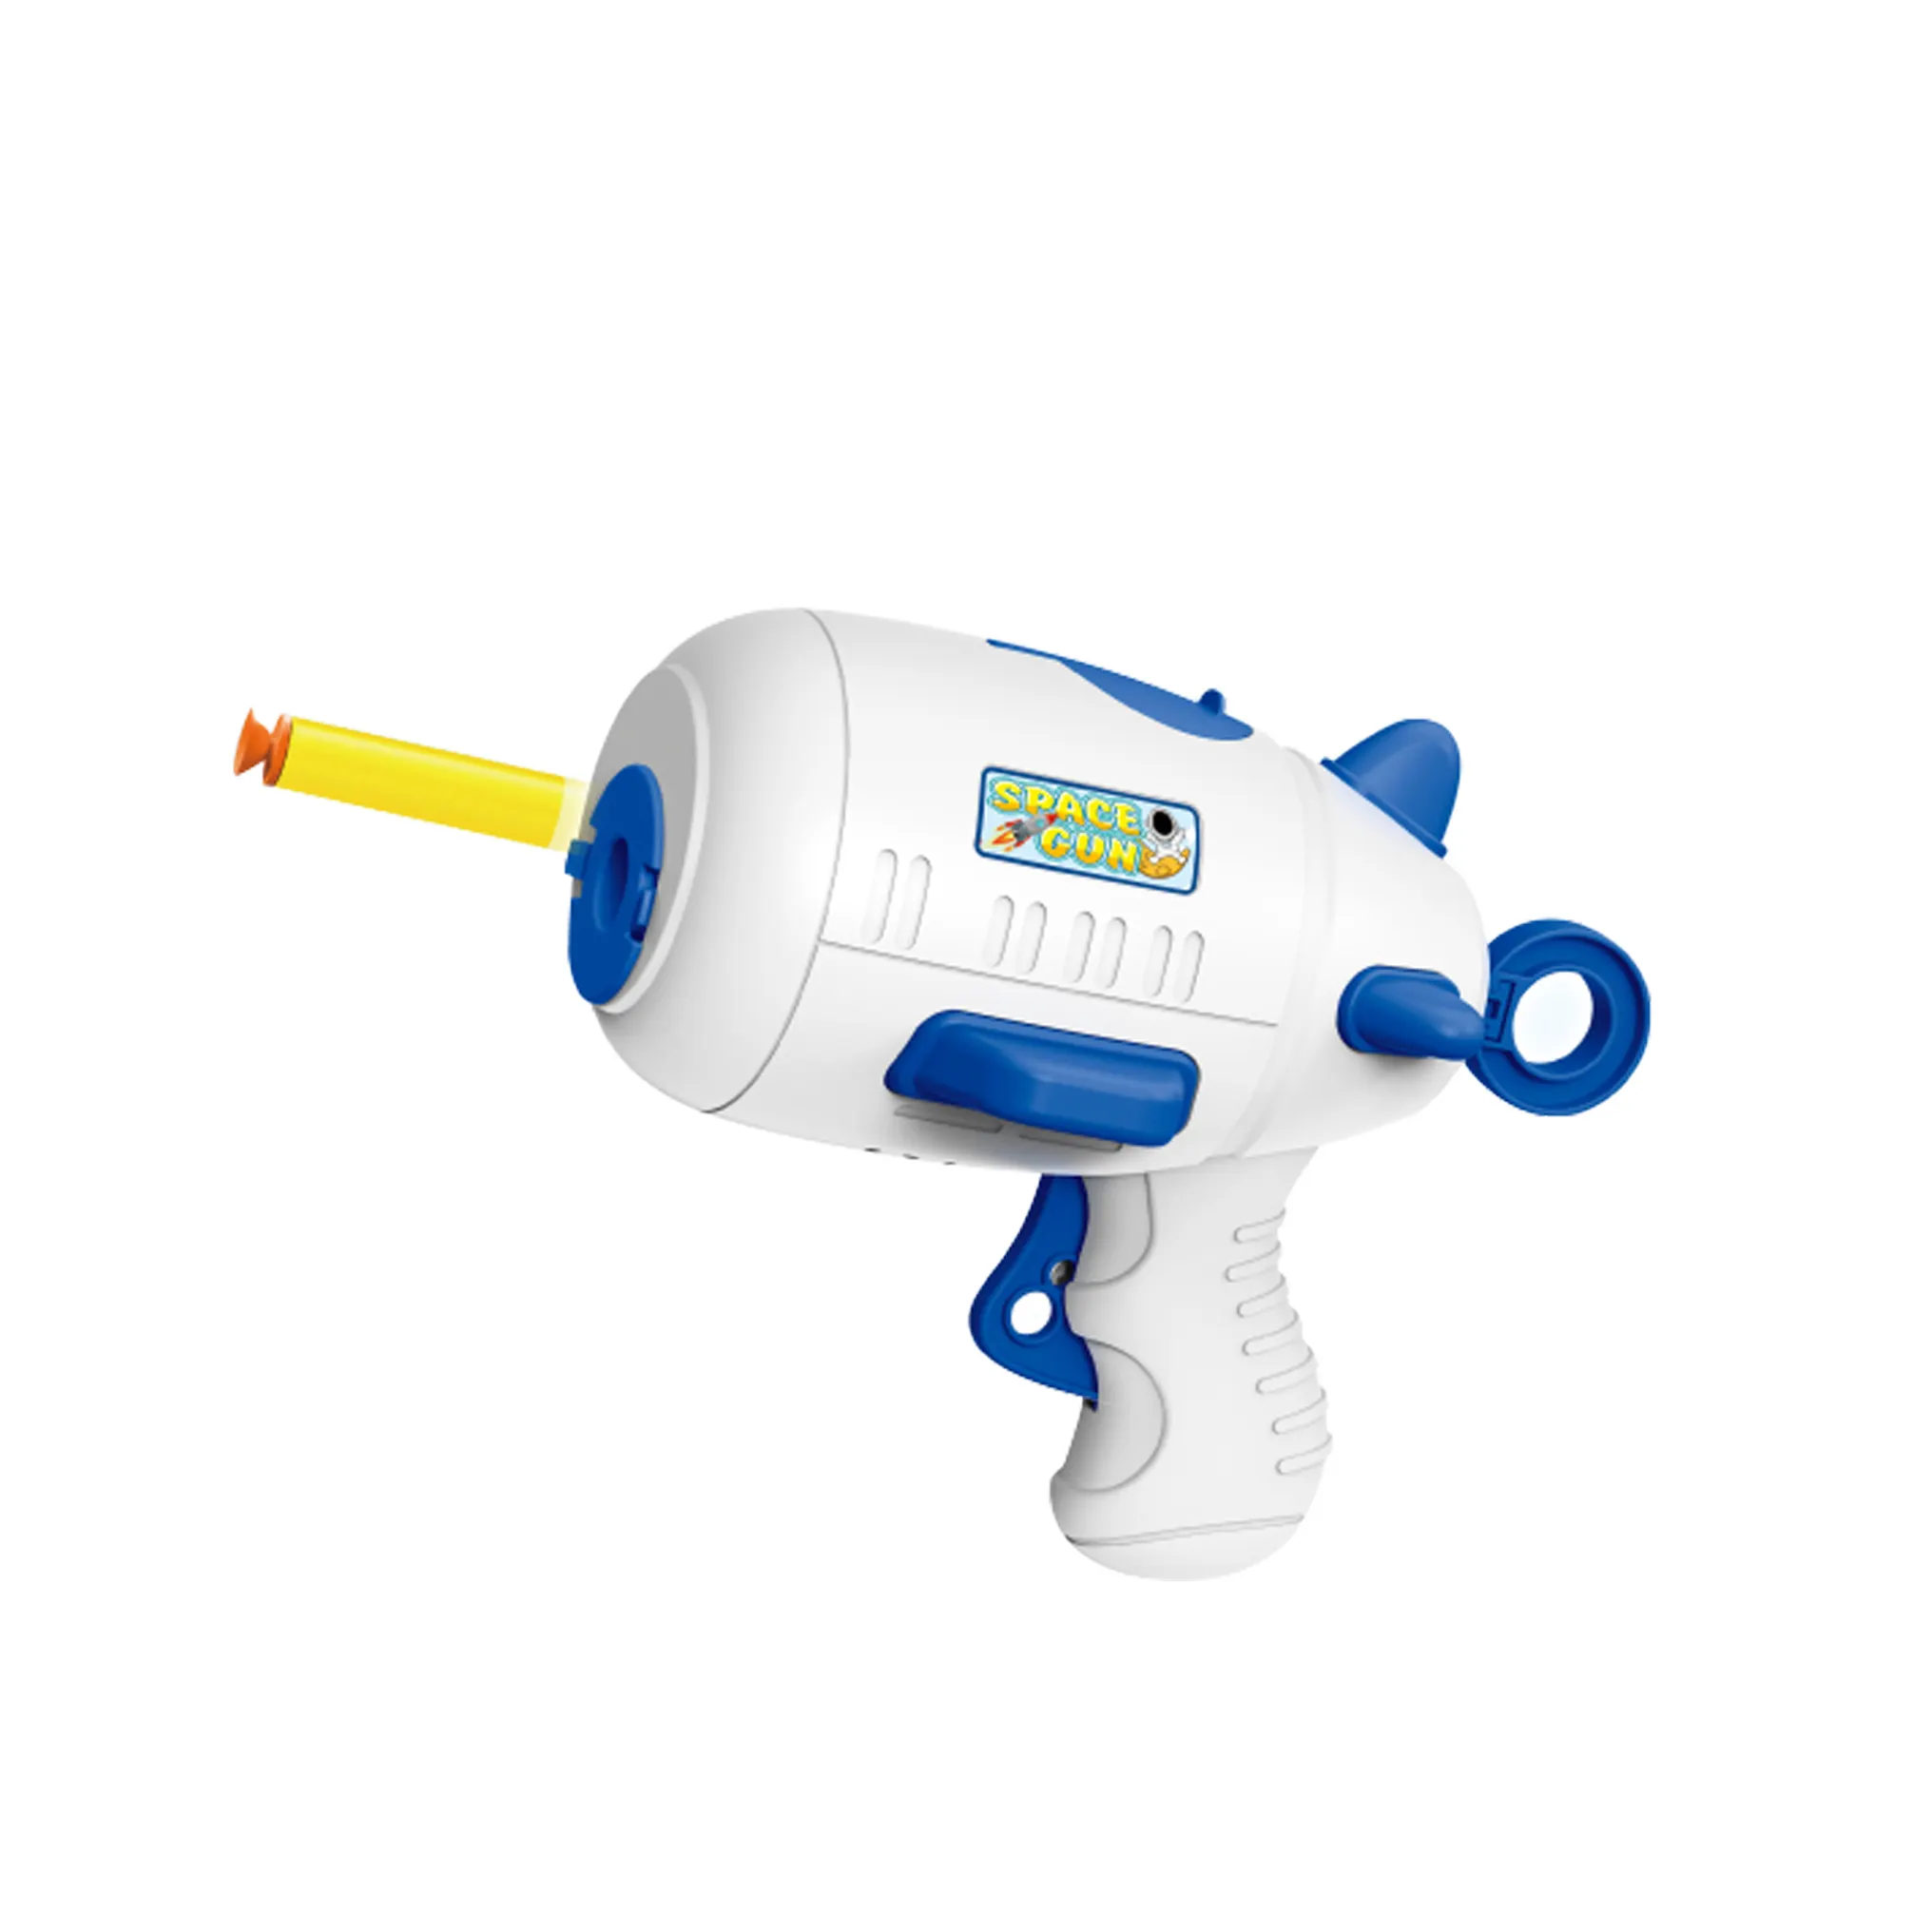 Hot space-themed EVA macio bala arma lançamento tiro indoor crianças formação fábrica atacado plástico presente brinquedos arma